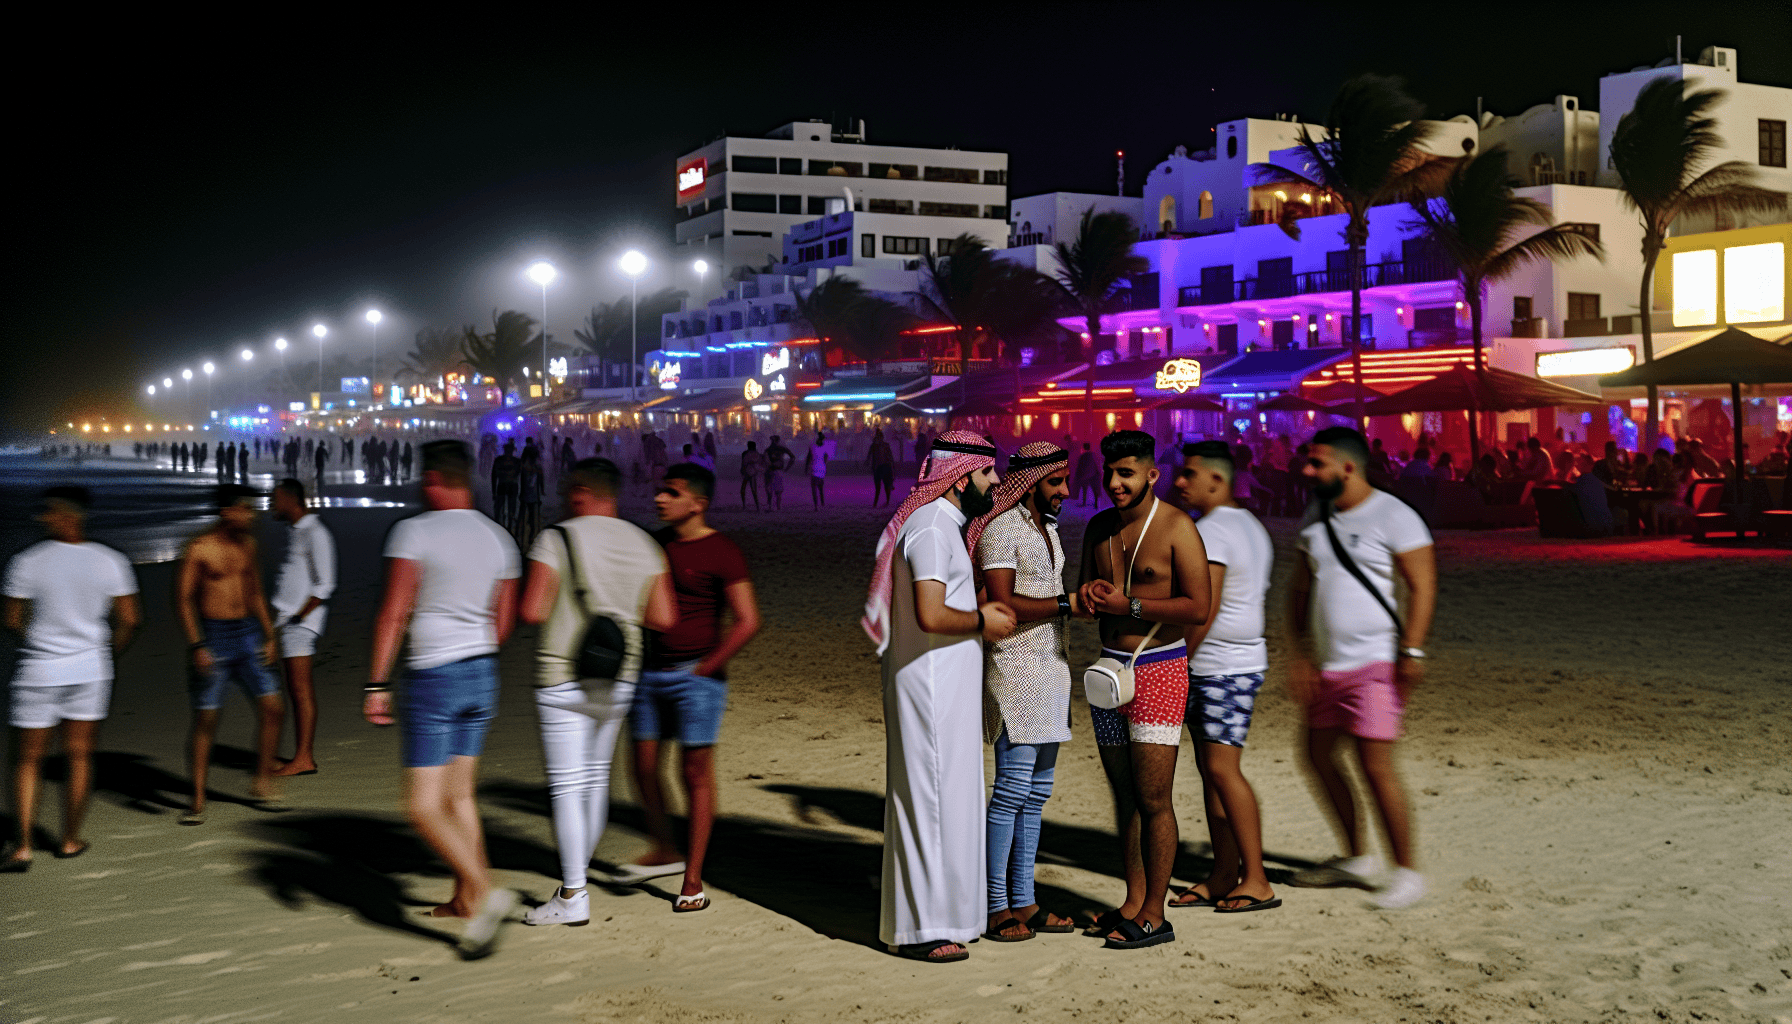 Vibrant nightlife at Playa de las Américas